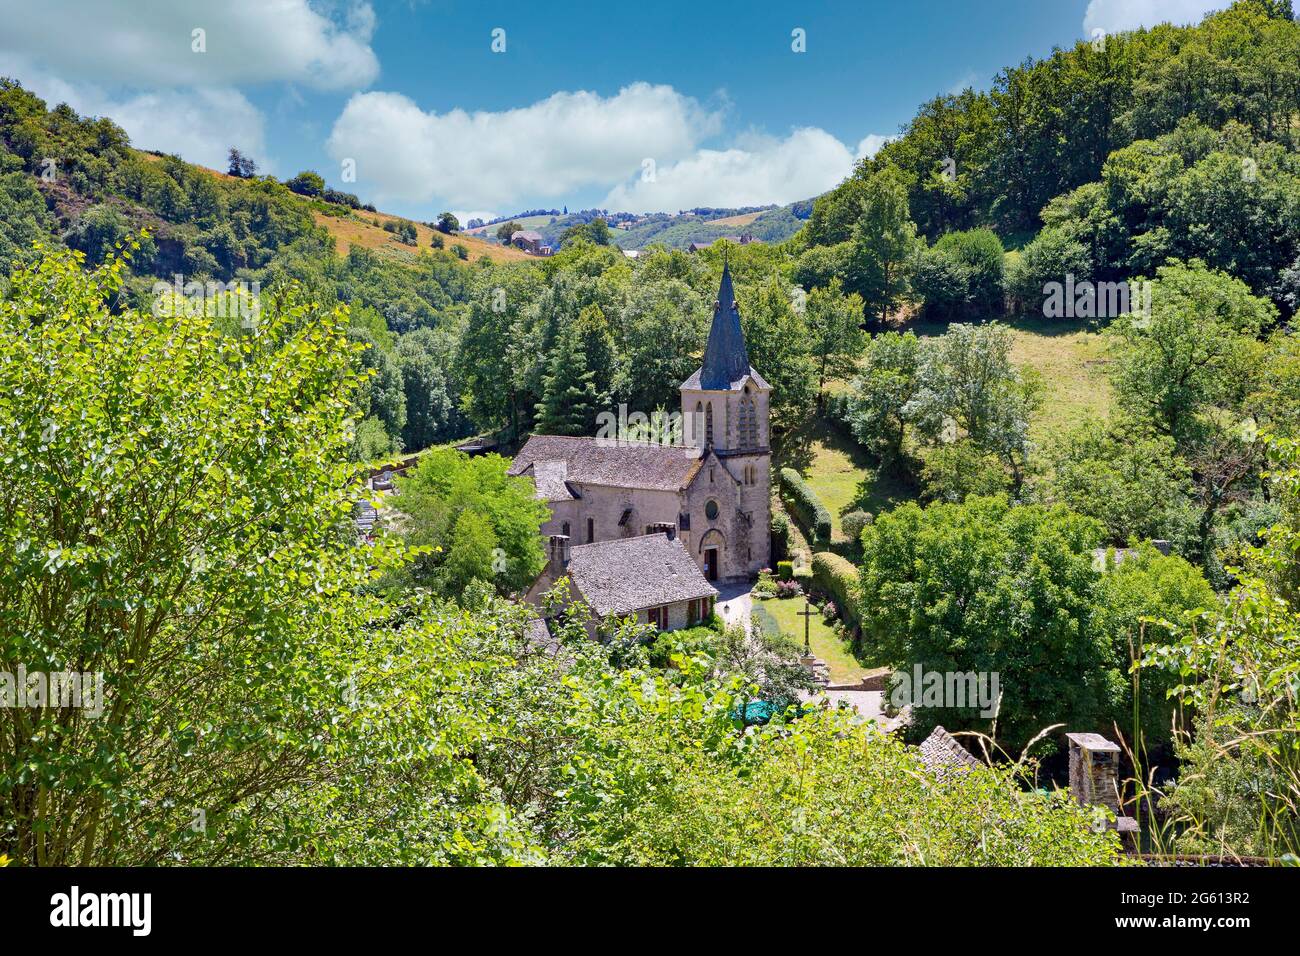 Frankreich, Aveyron, Dorf von Belcastel, ehemalige Etappe auf der Straße nach Saint-Jacques-de-Compostelle, Dorf als eines der schönsten Dörfer in Frankreich bezeichnet, EIN Blick von der Spitze des Dorfes mit am unteren Rand Sainte-Marie-Madeleine Kirche, 15. Jahrhundert Kirche Stockfoto